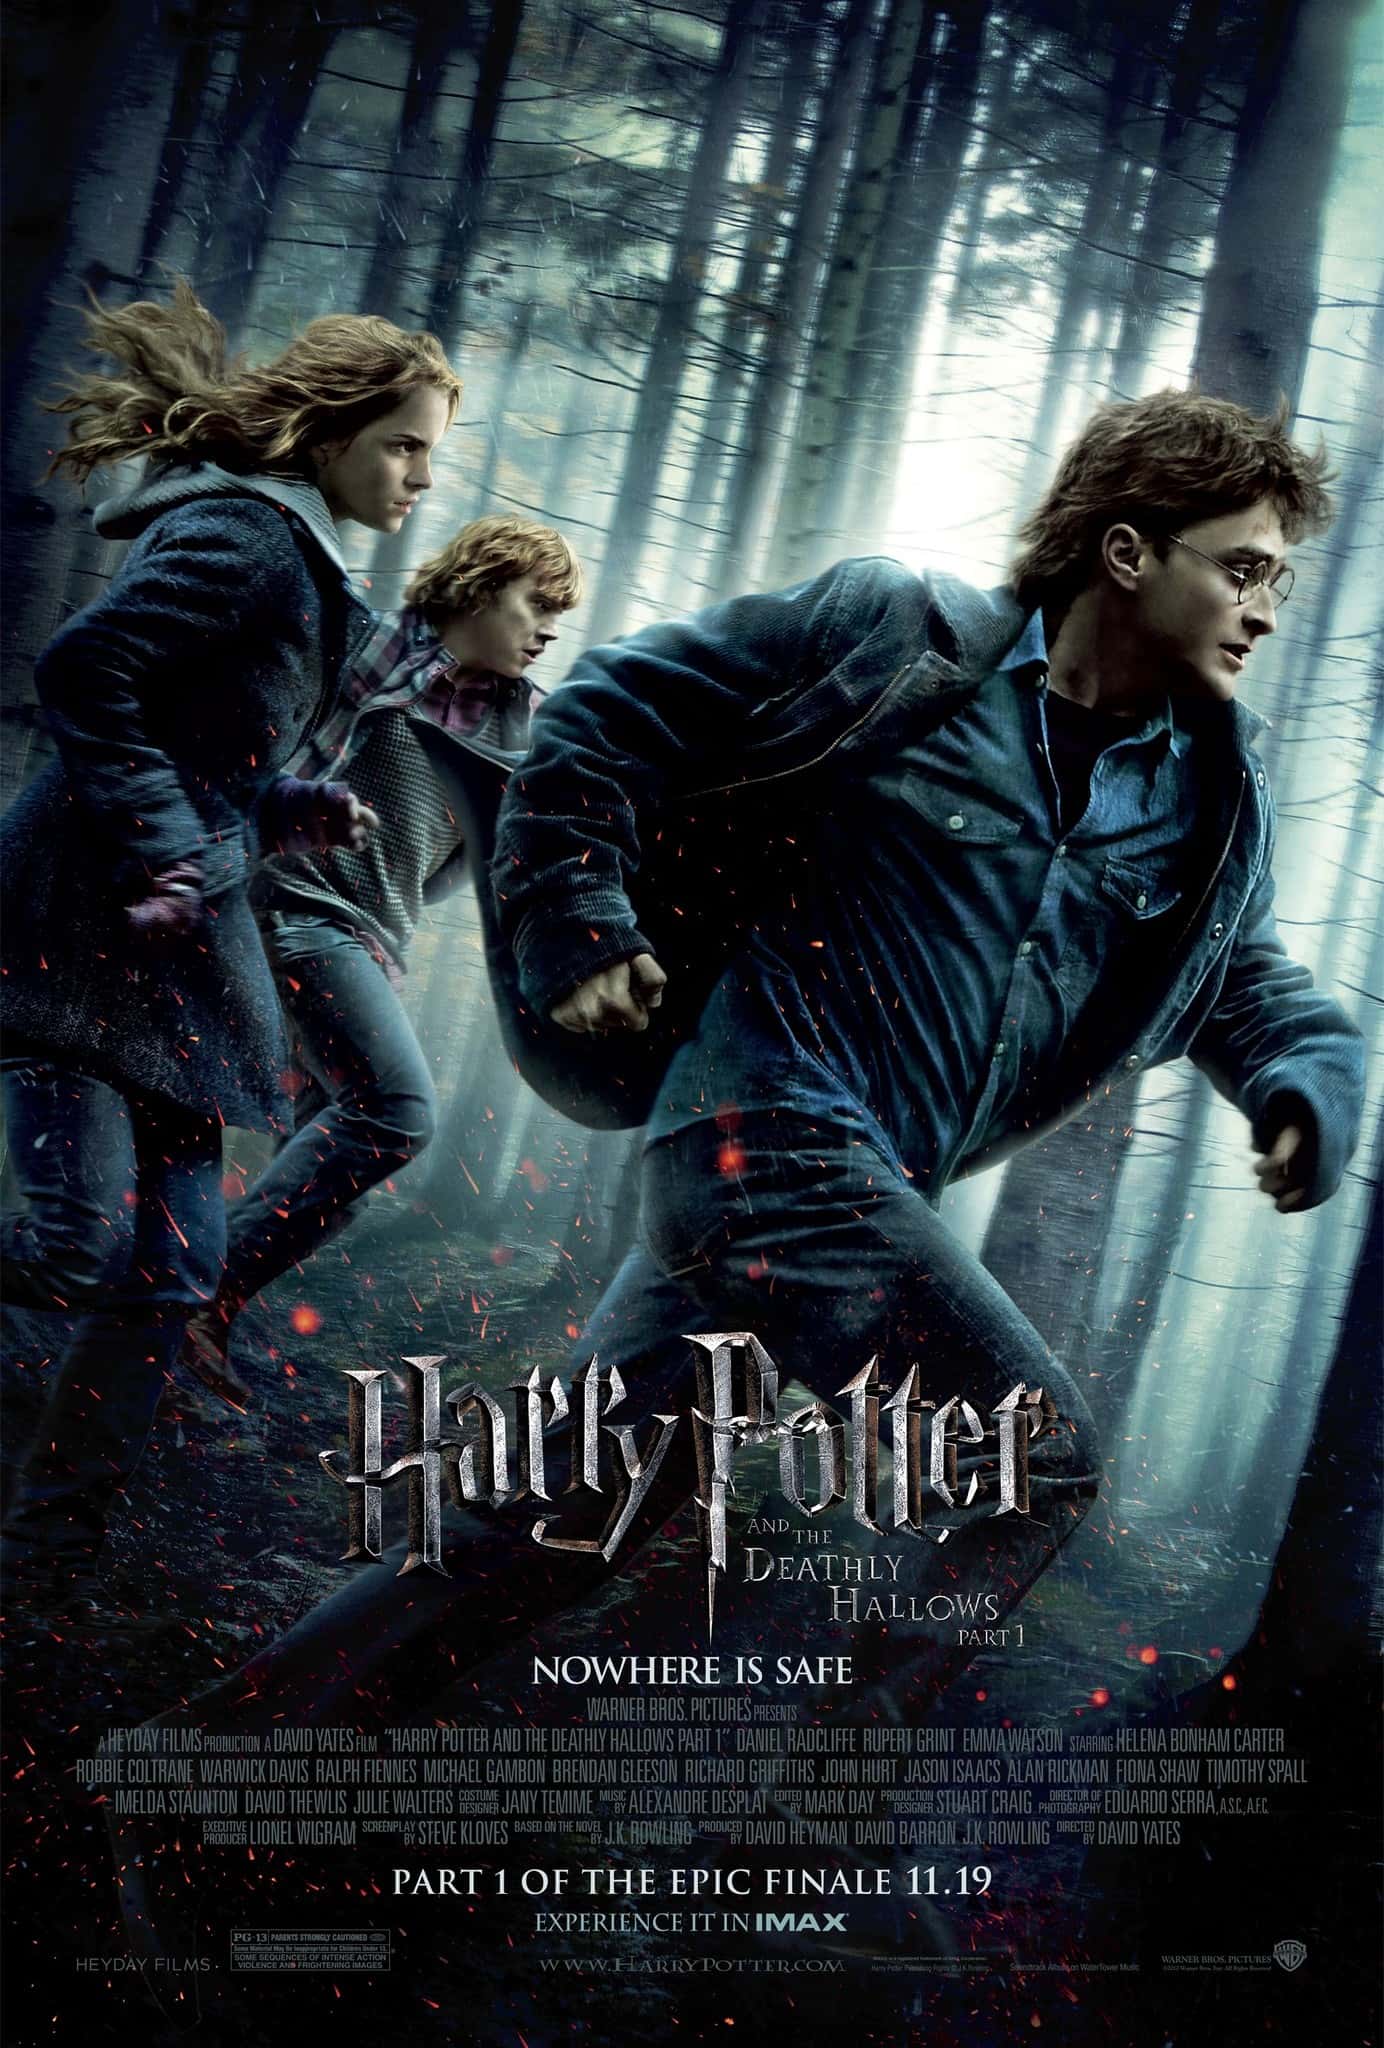 Harry Potter 7 Part 1 แฮร์รี่ พอตเตอร์ ภาค 7.1 กับเครื่องรางยมฑูต